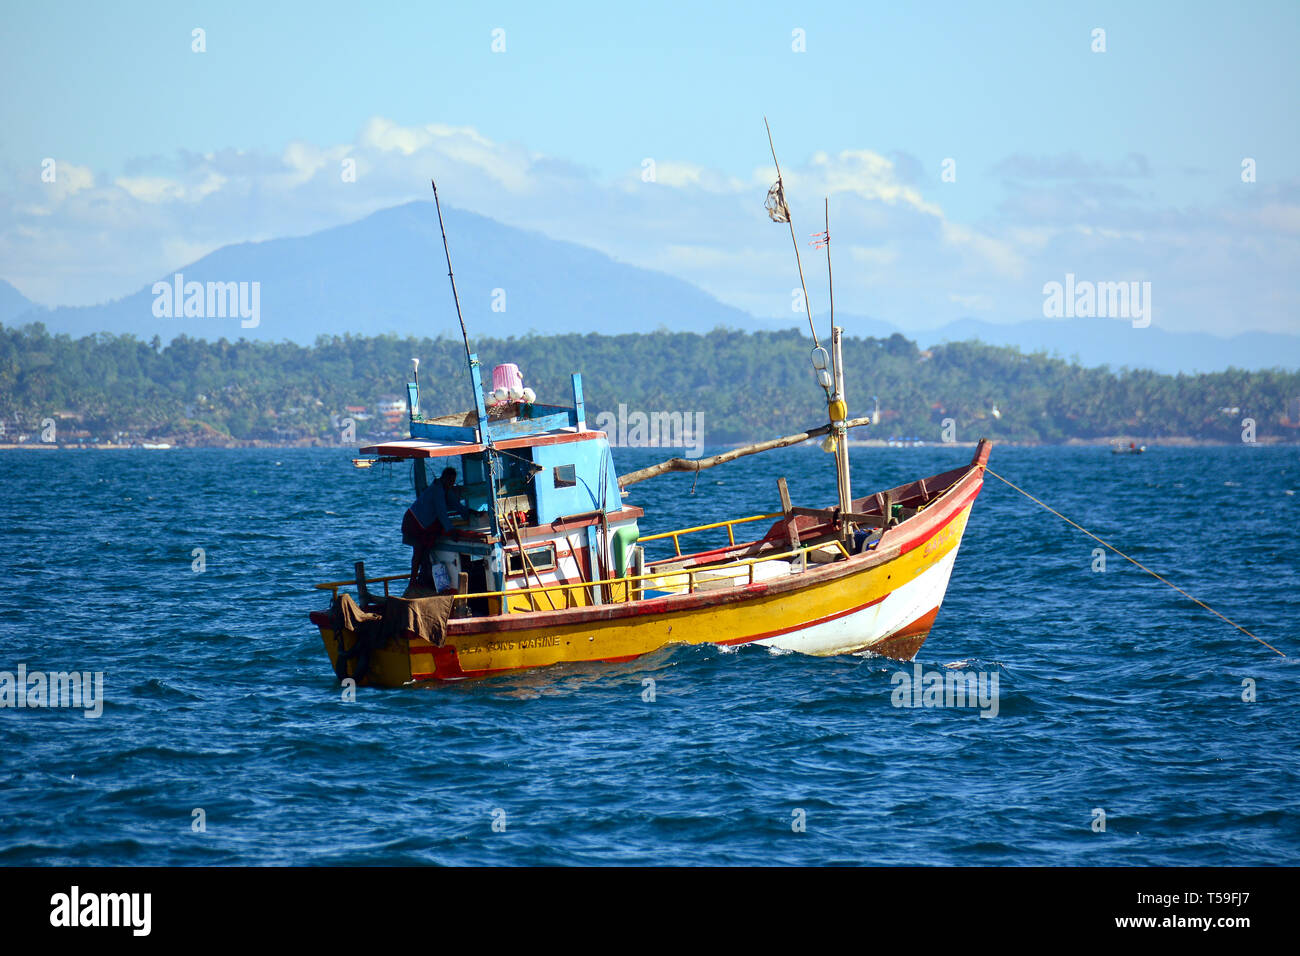 Barca da pesca, Mirissa, Sri Lanka. Halászcsónak, Mirissa, Srí Lanka. Foto Stock